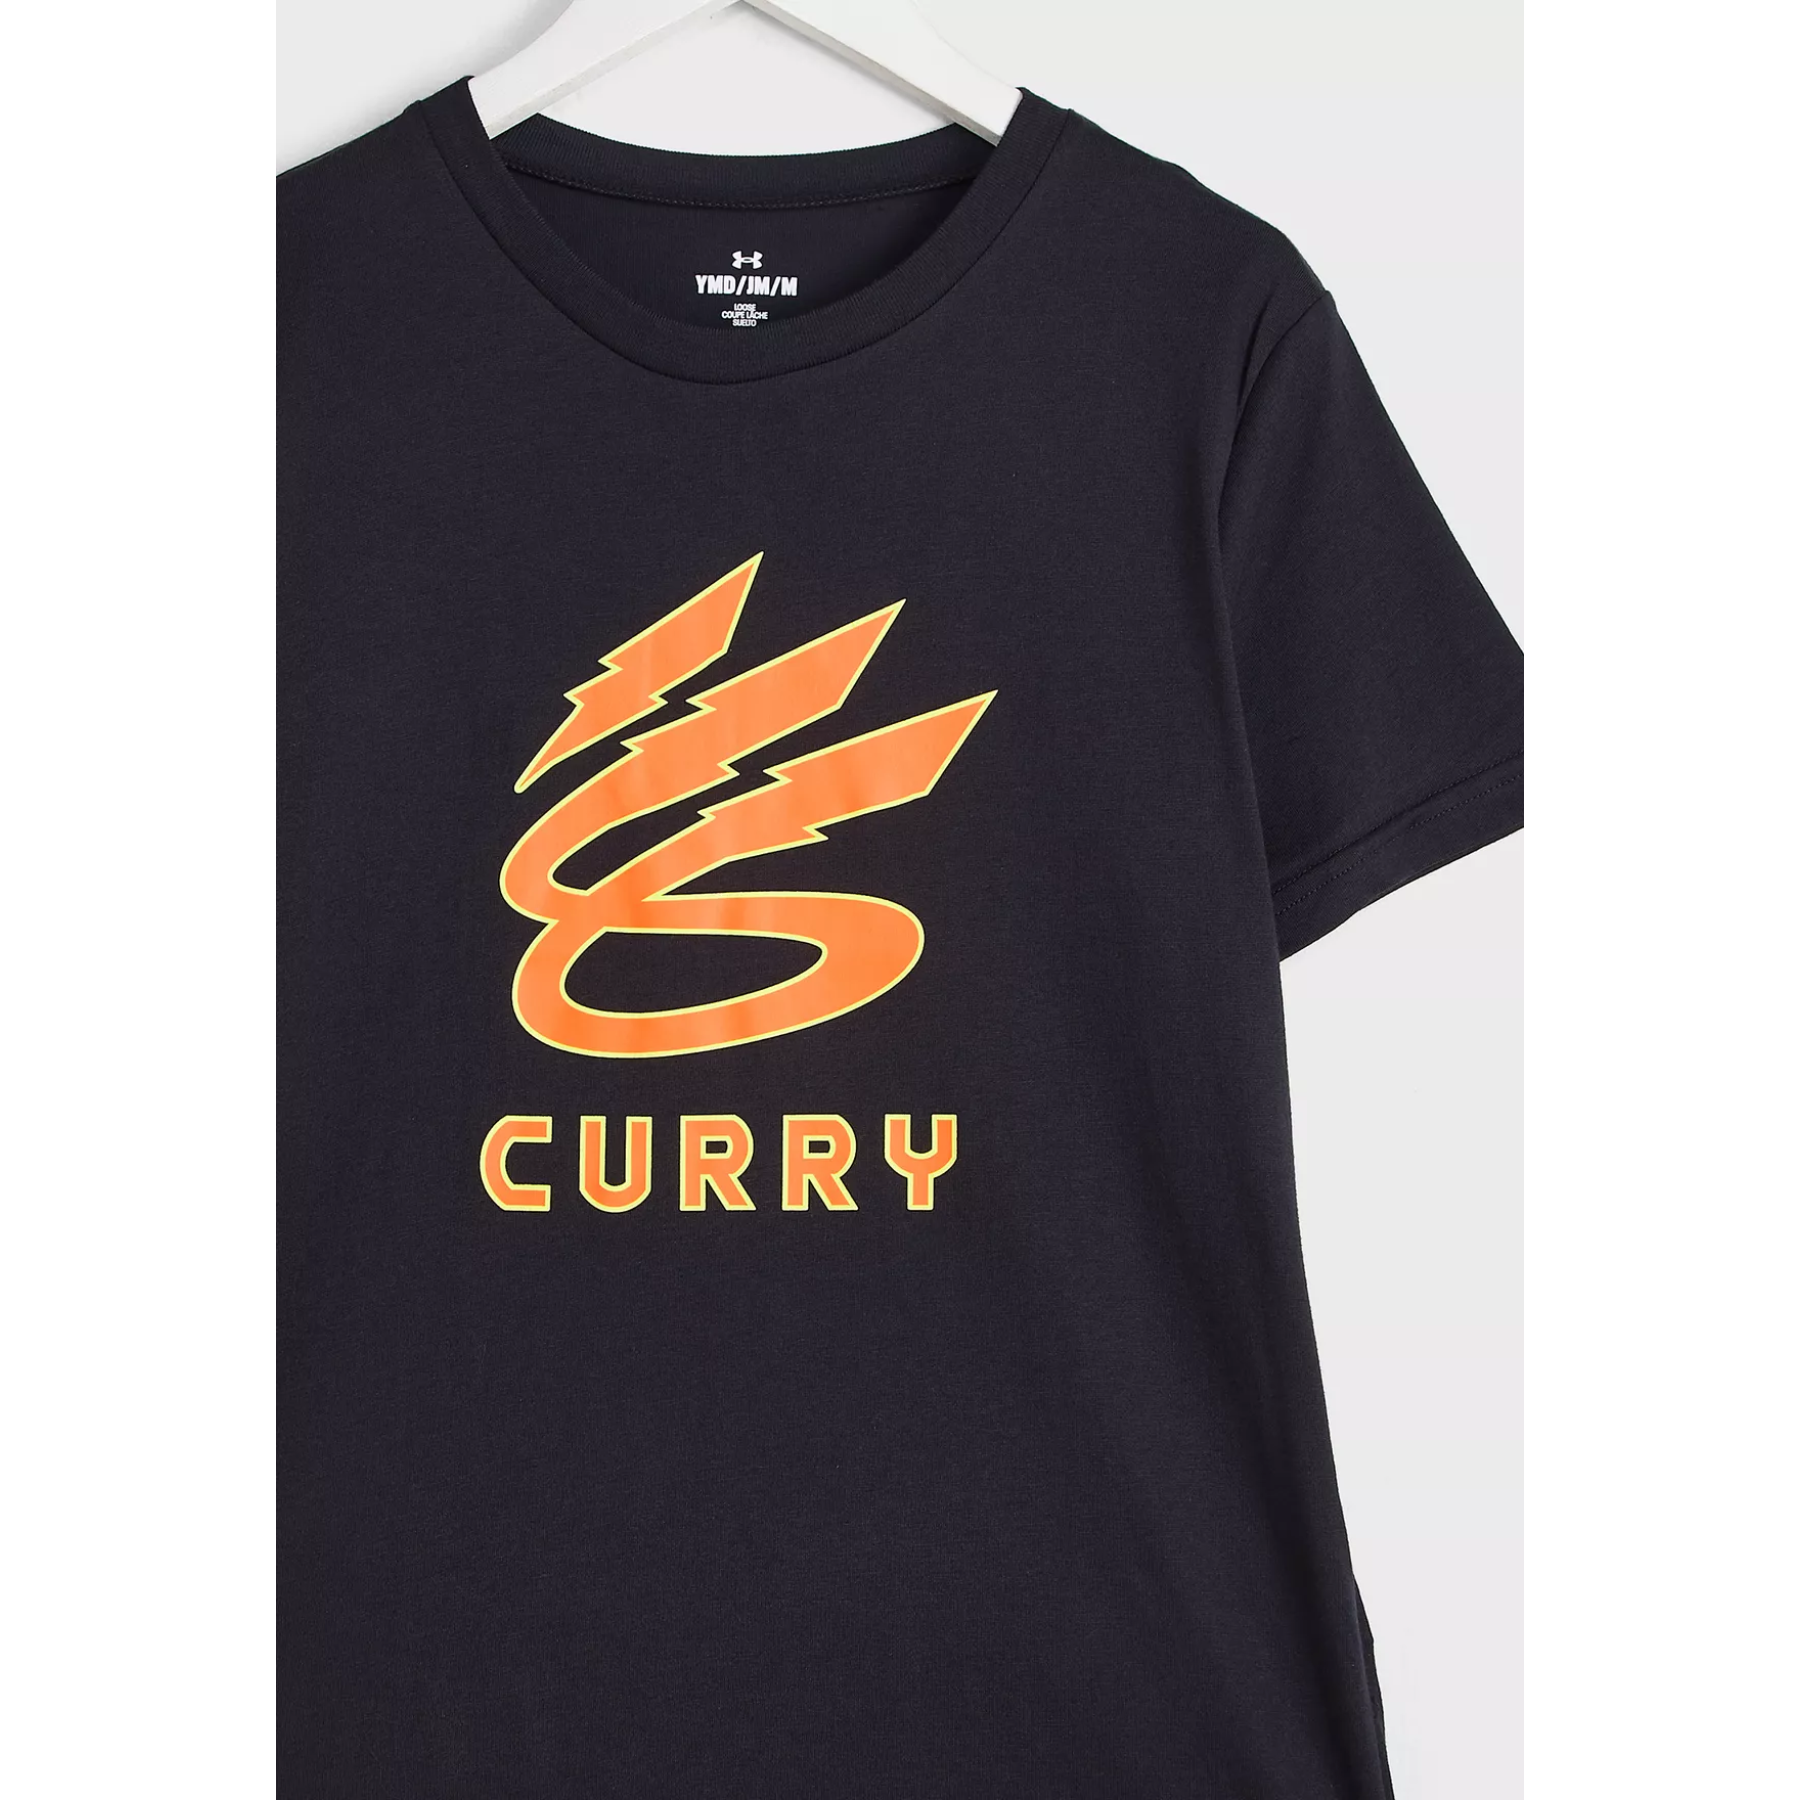 Jongens-T-shirt Under Armour Curry Lightning 